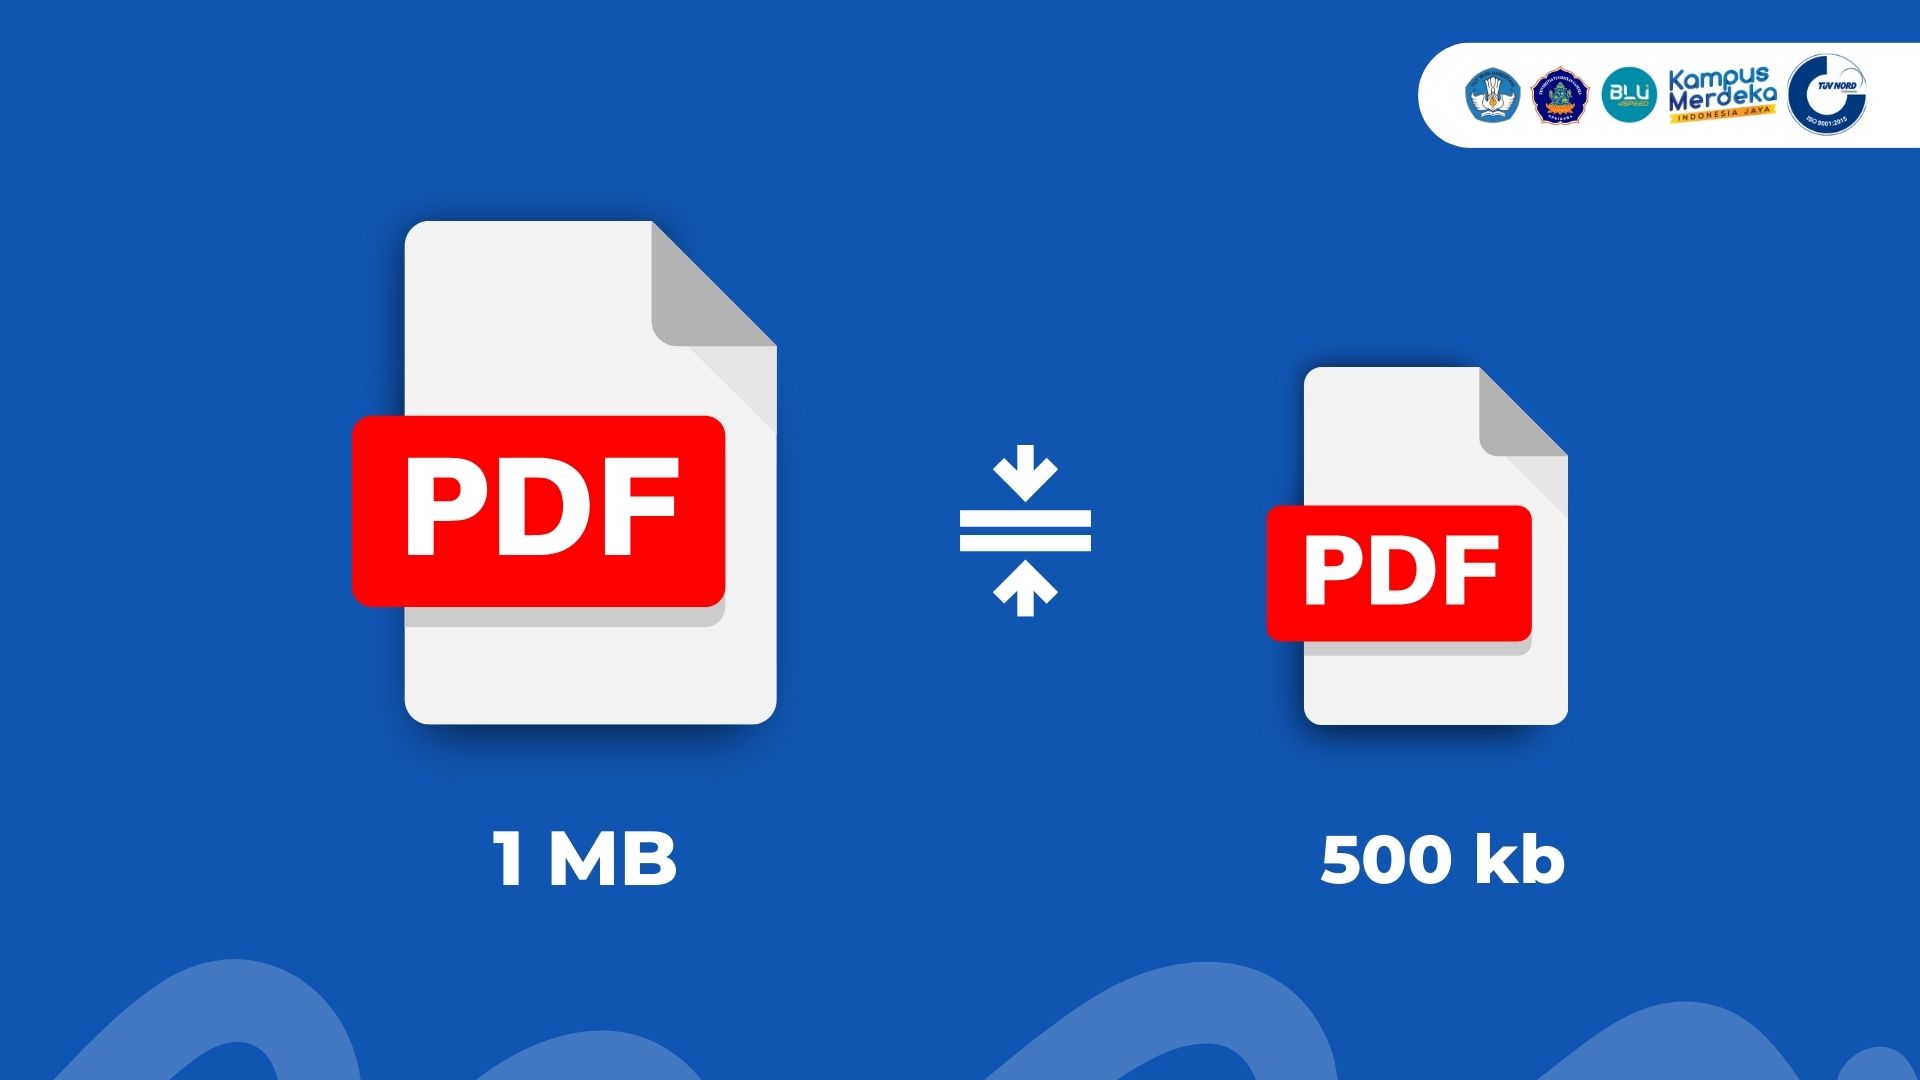 Aplikasi Mengecilkan File Pdf. 6 Rekomendasi Website untuk Mengecilkan File PDF